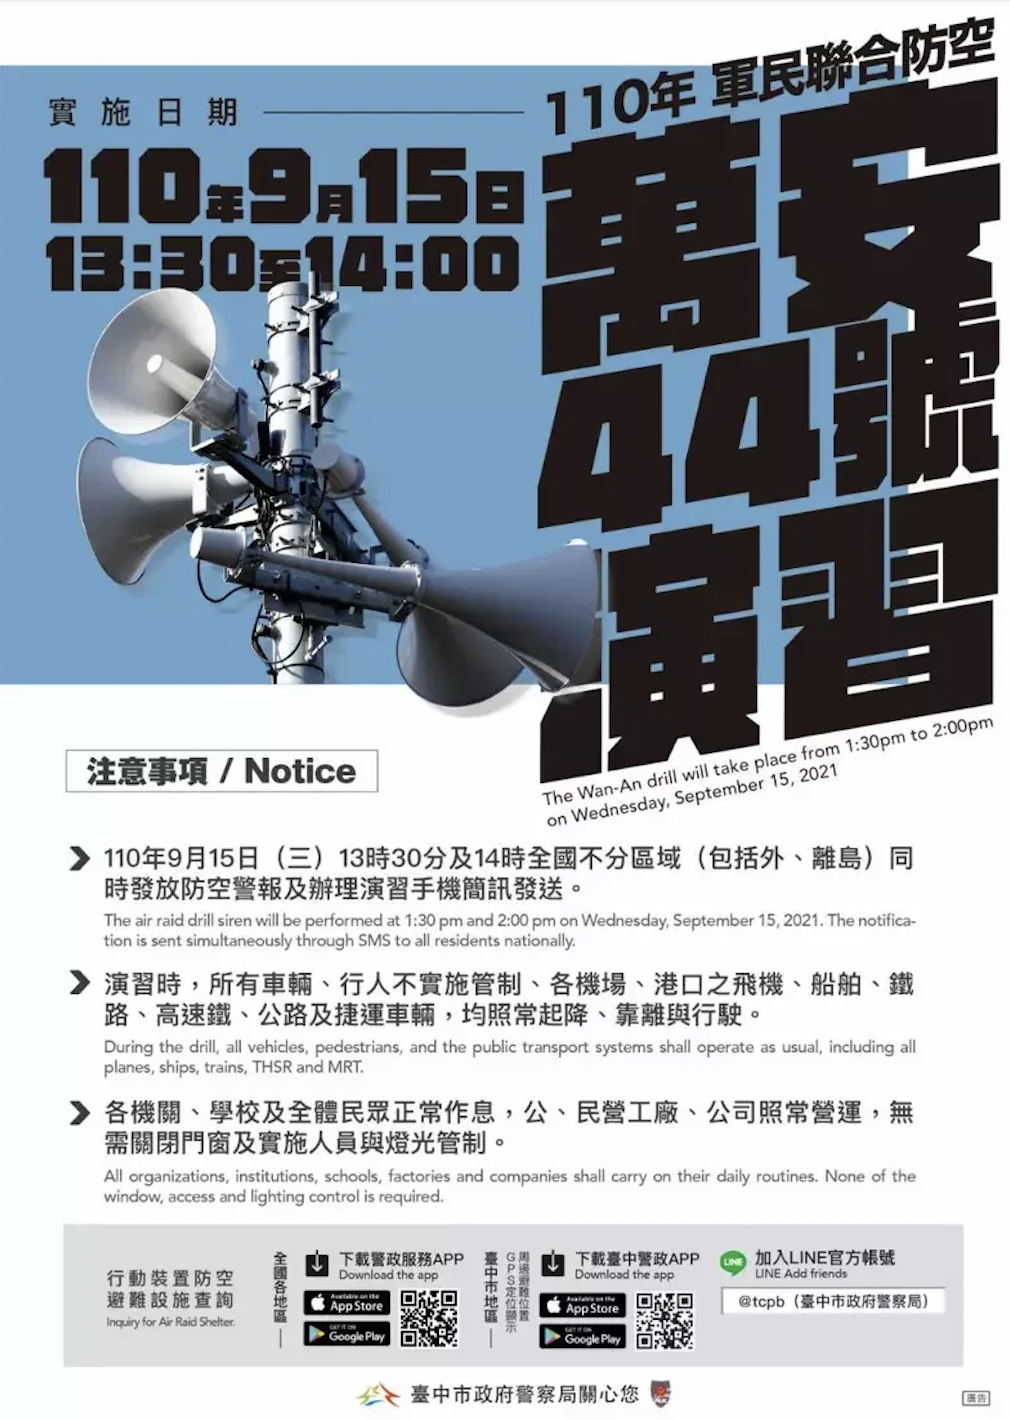 Cuộc diễn tập "Vạn An 44" năm 2021 sẽ được tiến hành từ 13:30 đến 14:00 ngày 15/9, kéo dài 30 phút. (Nguồn ảnh: Cục Cảnh sát thành phố Đài Nam)